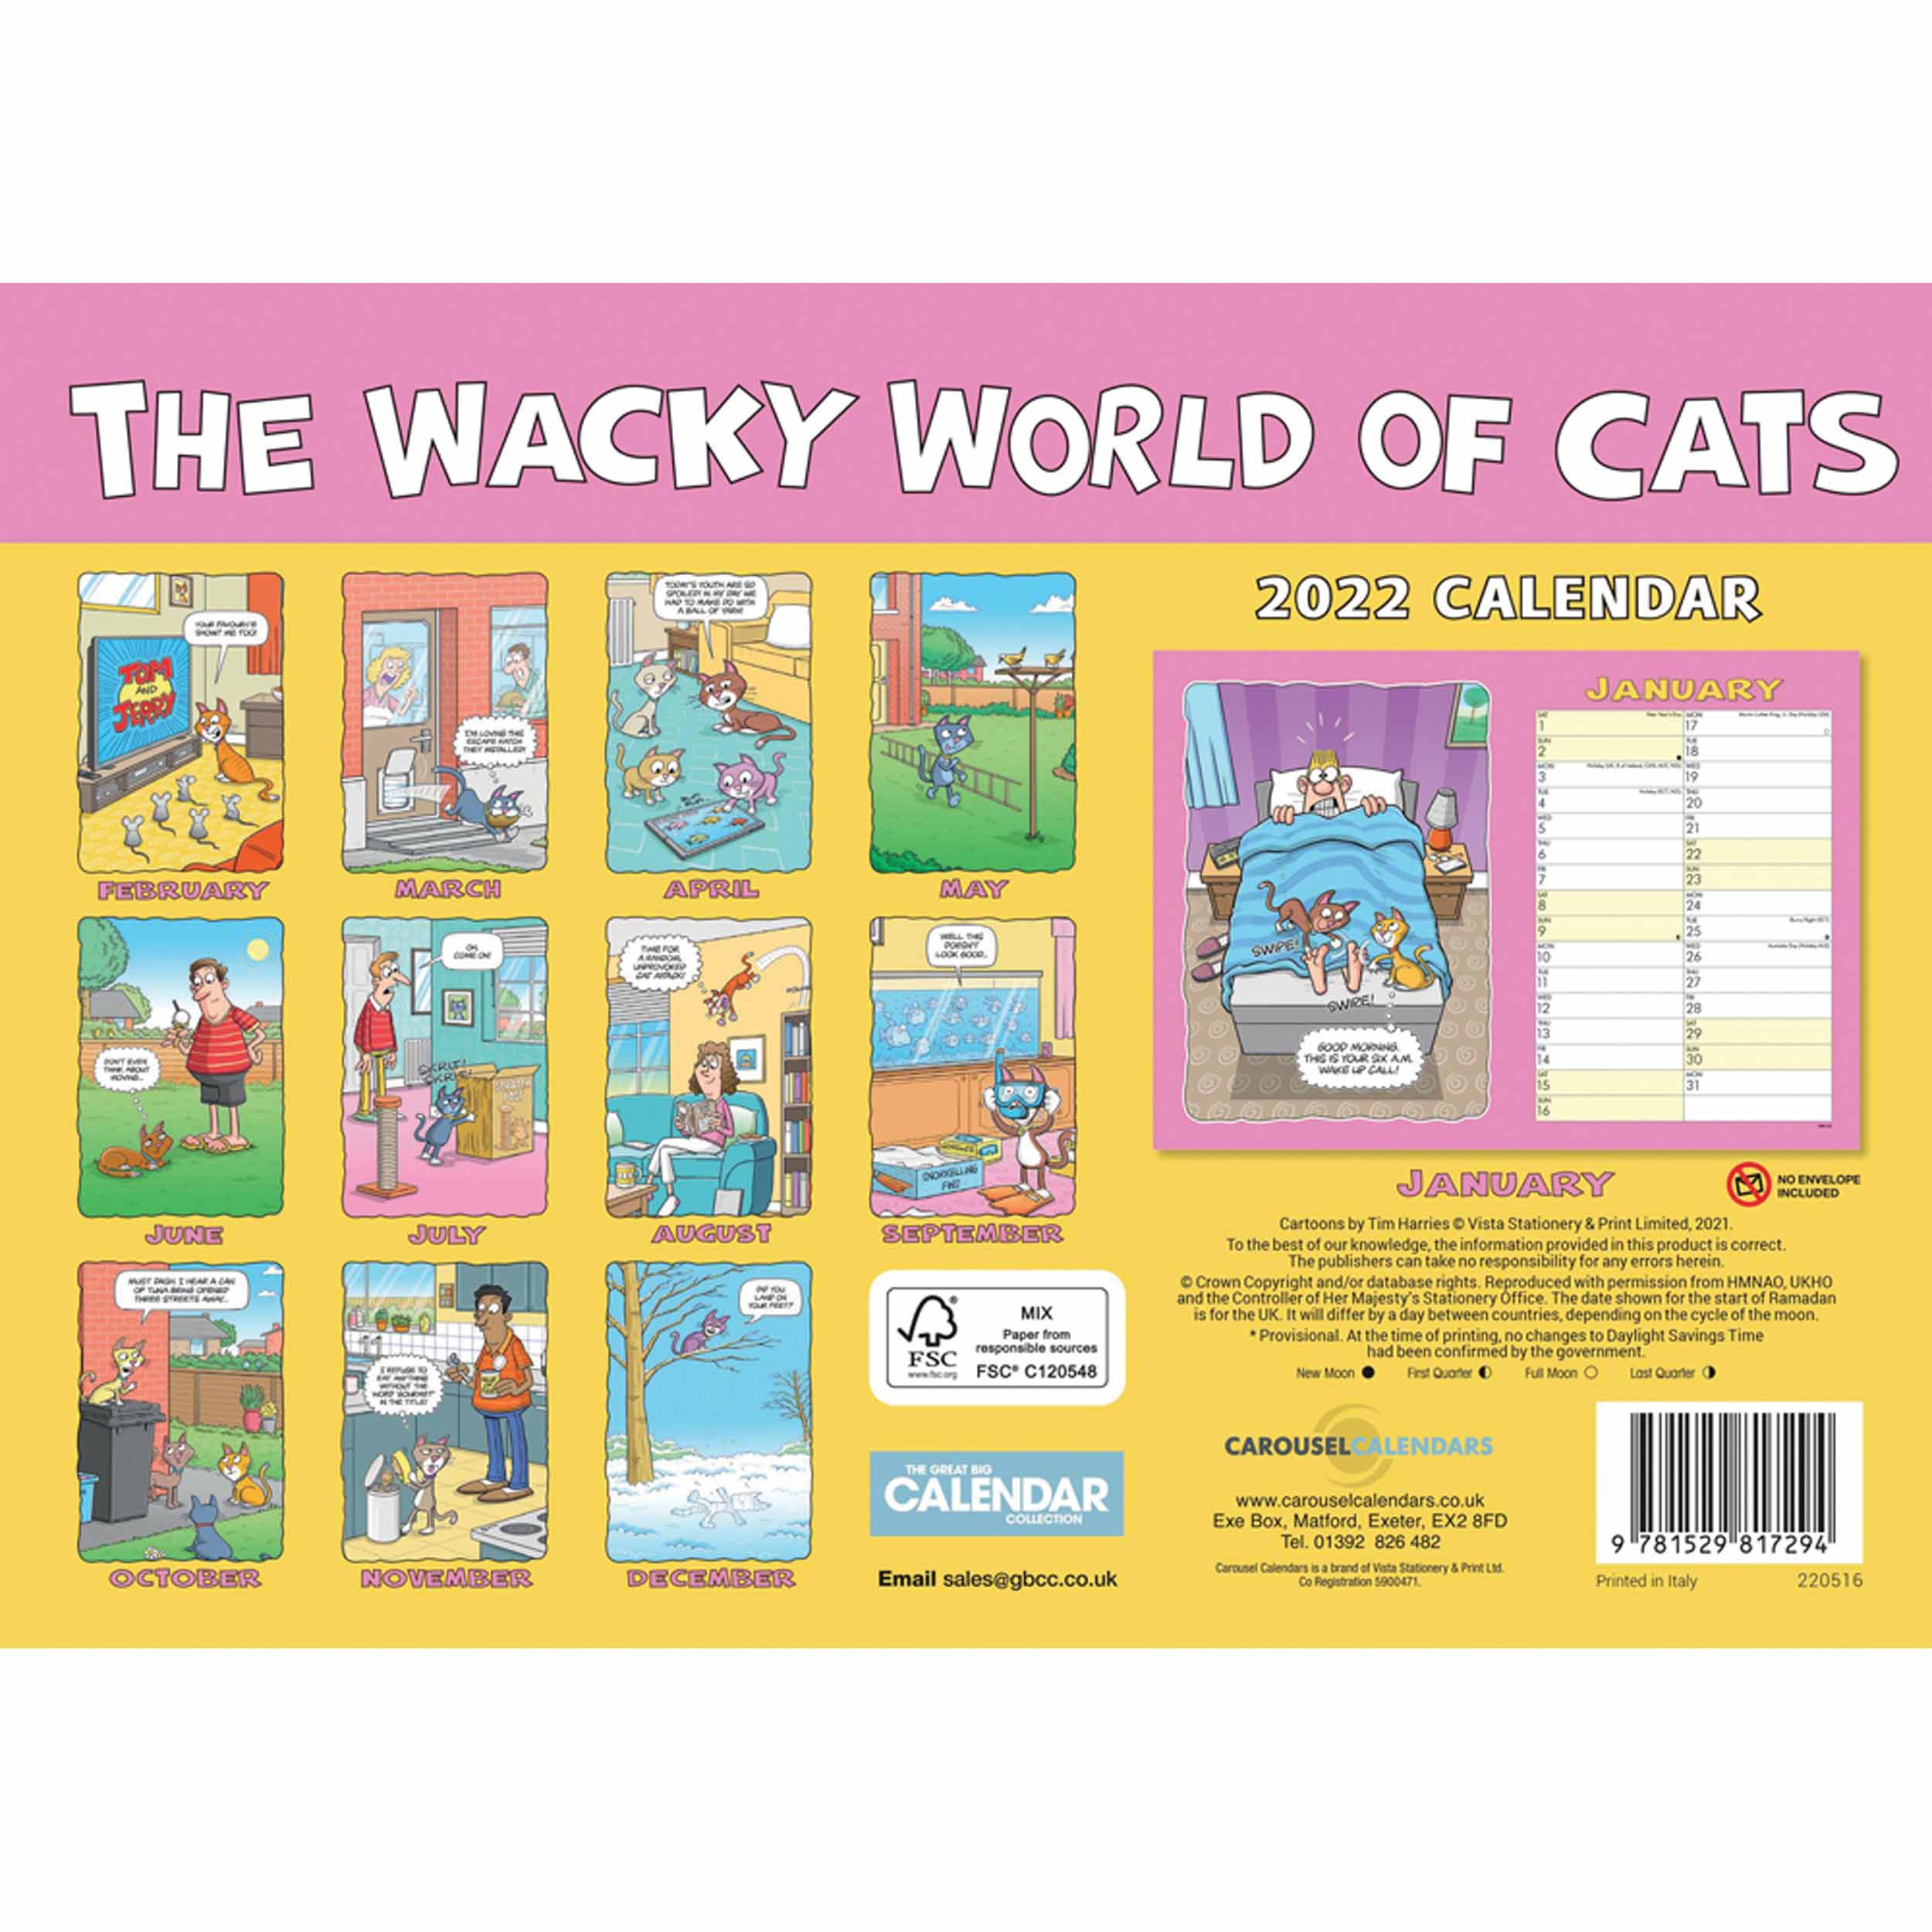 Wacky World Of Cats A4 Calendar 2022 at Calendar Club